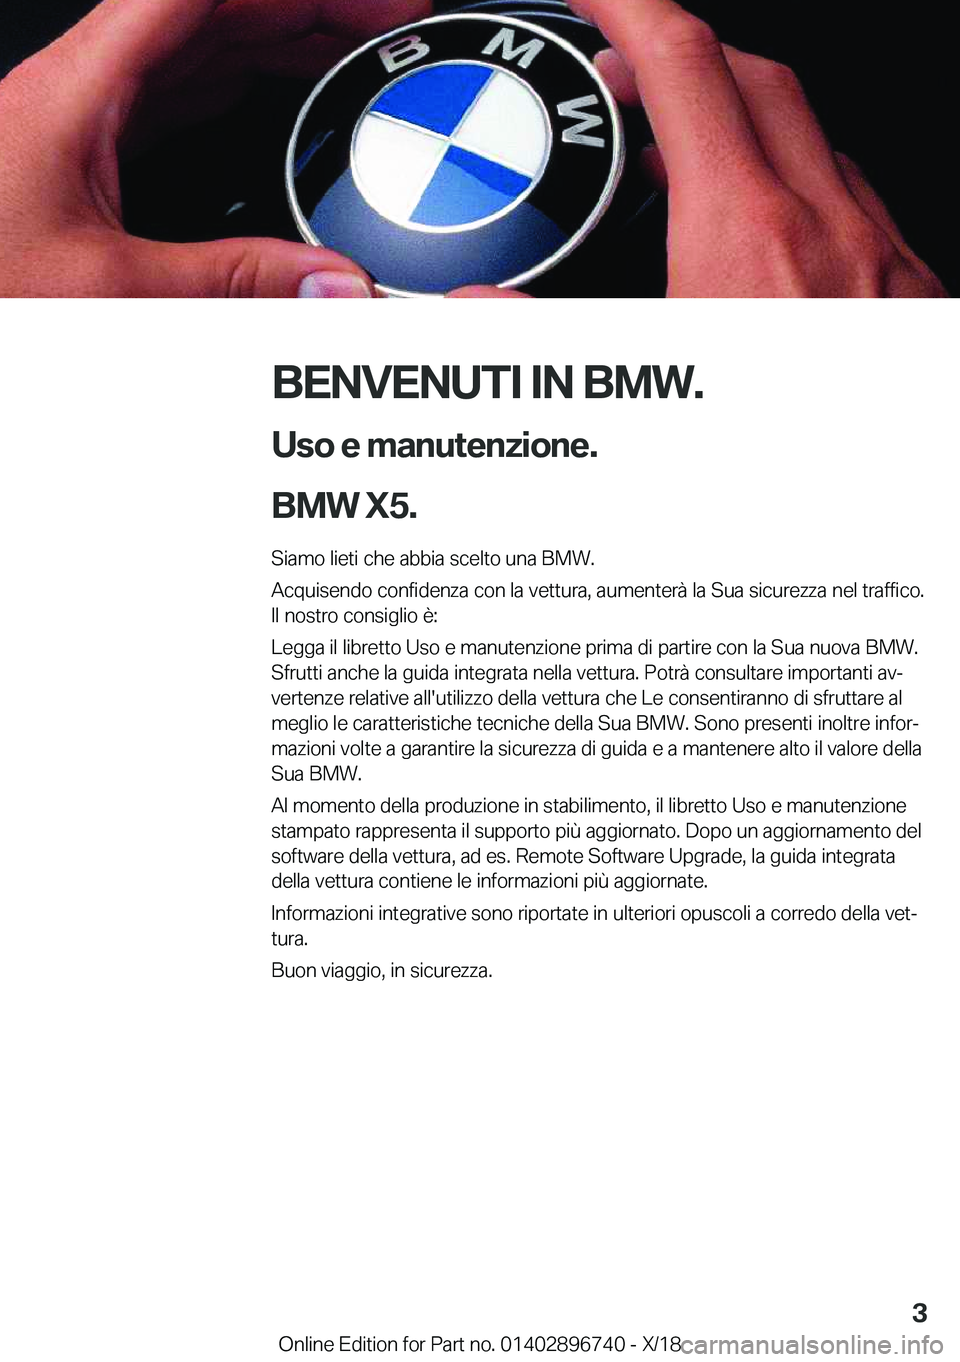 BMW X5 2019  Libretti Di Uso E manutenzione (in Italian) �B�E�N�V�E�N�U�T�I��I�N��B�M�W�.�U�s�o��e��m�a�n�u�t�e�n�z�i�o�n�e�.
�B�M�W��X�5�.
�S�i�a�m�o��l�i�e�t�i��c�h�e��a�b�b�i�a��s�c�e�l�t�o��u�n�a��B�M�W�.
�A�c�q�u�i�s�e�n�d�o��c�o�n�f�i�d�e�